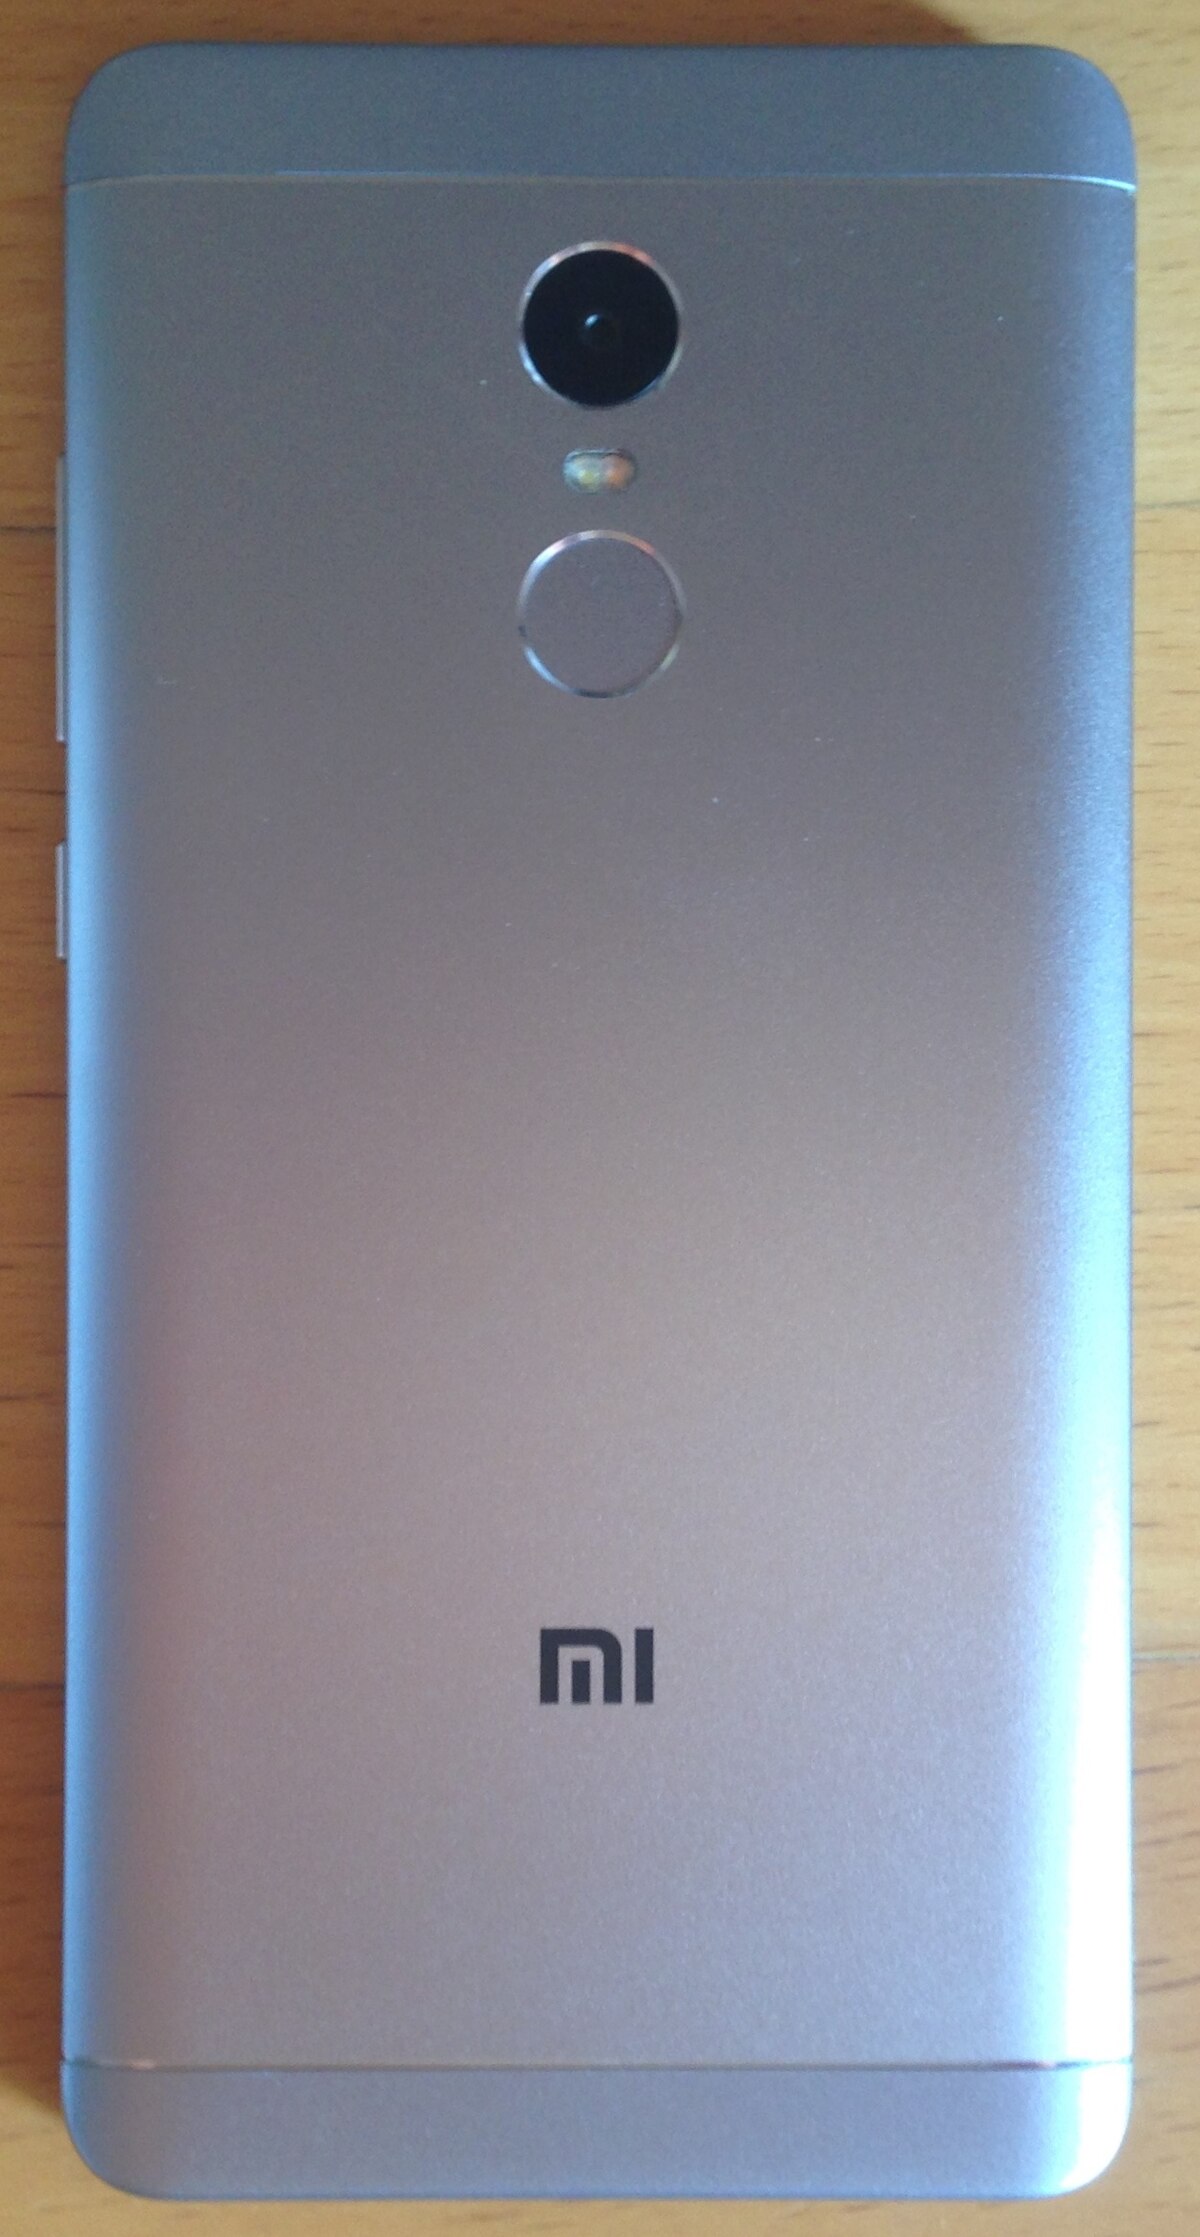 File:Xiaomi Mi 5X.jpg - Wikipedia